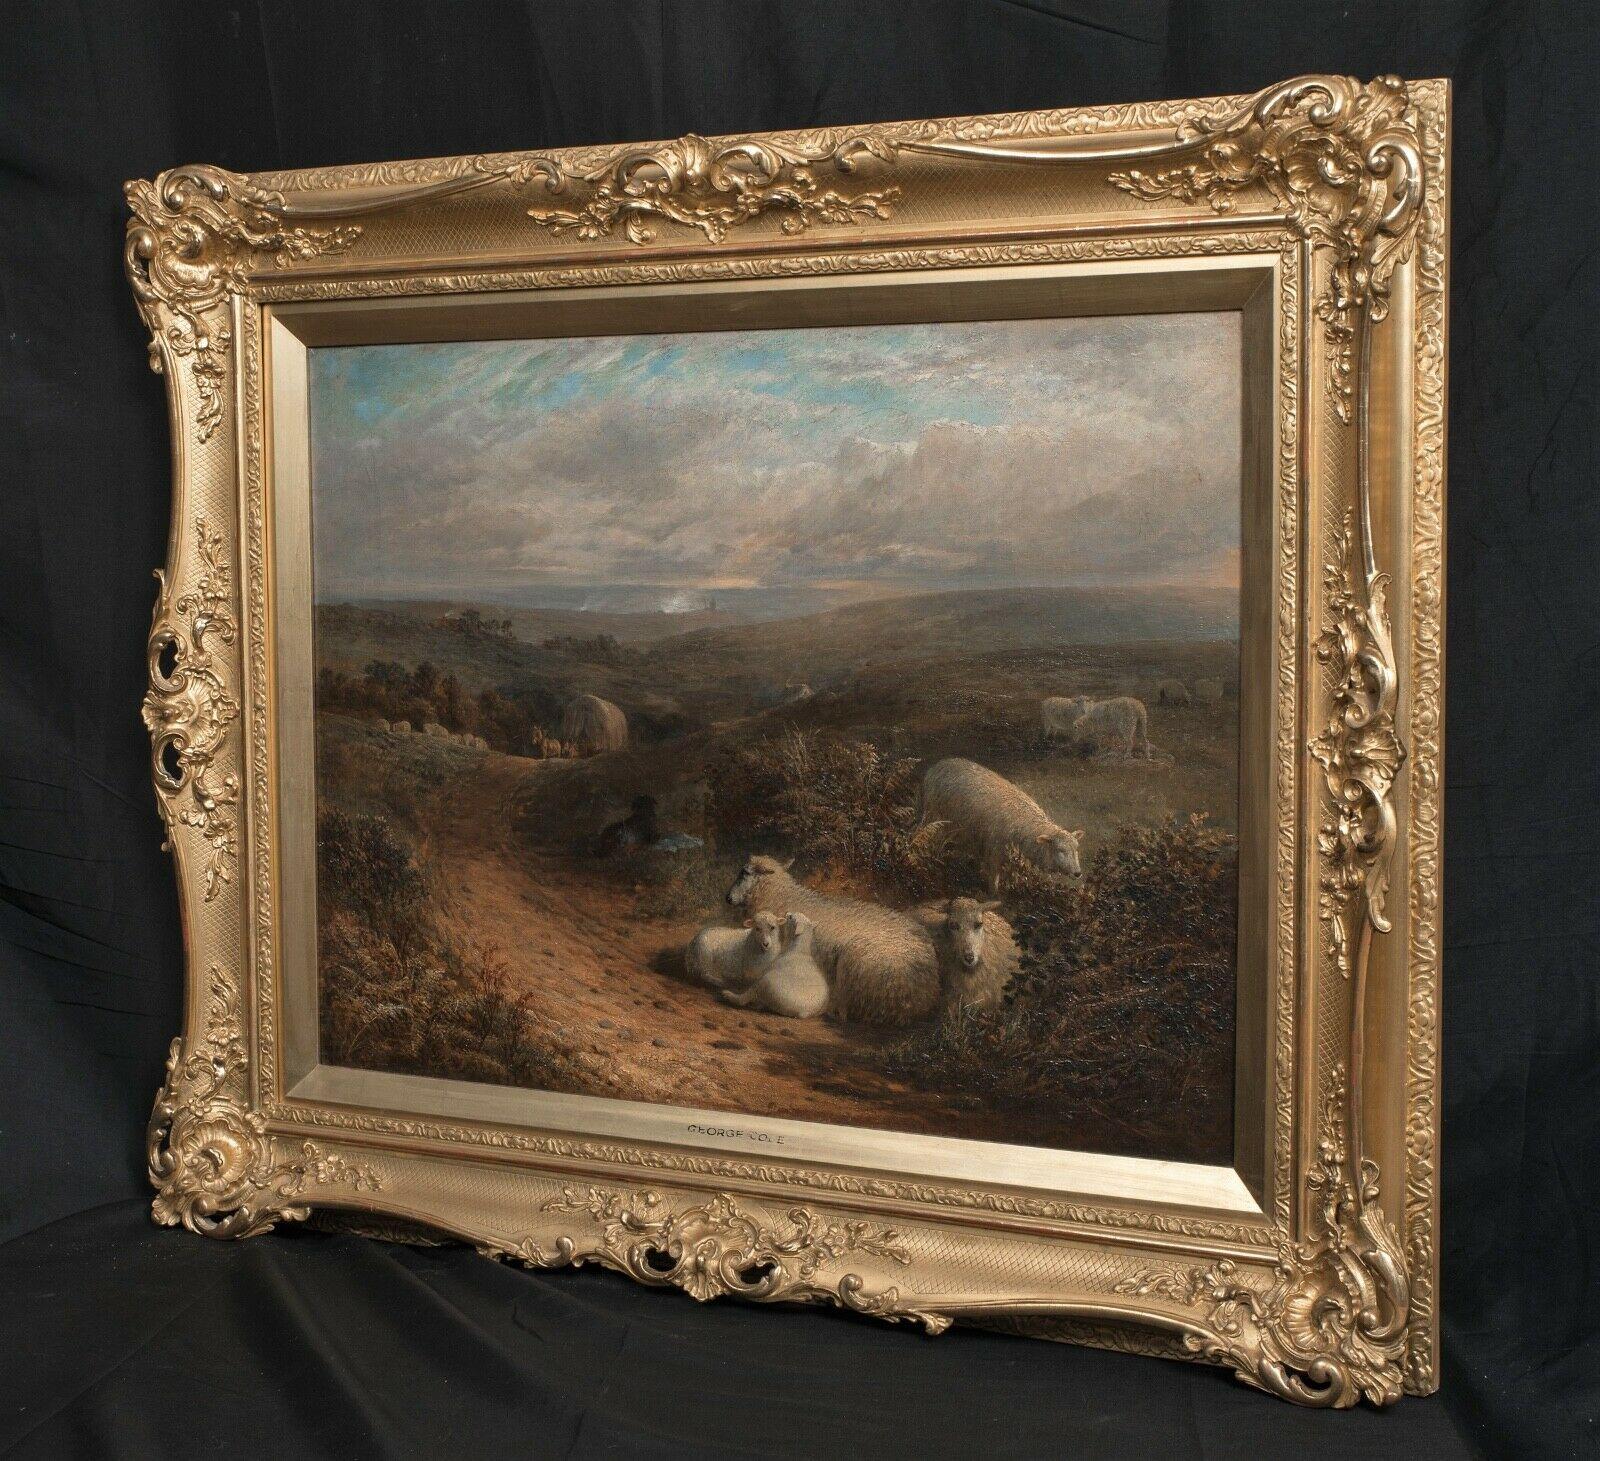 Moutons se reposant dans un paysage, près de Guildford, Surrey, 19e siècle  - Painting de George Cole